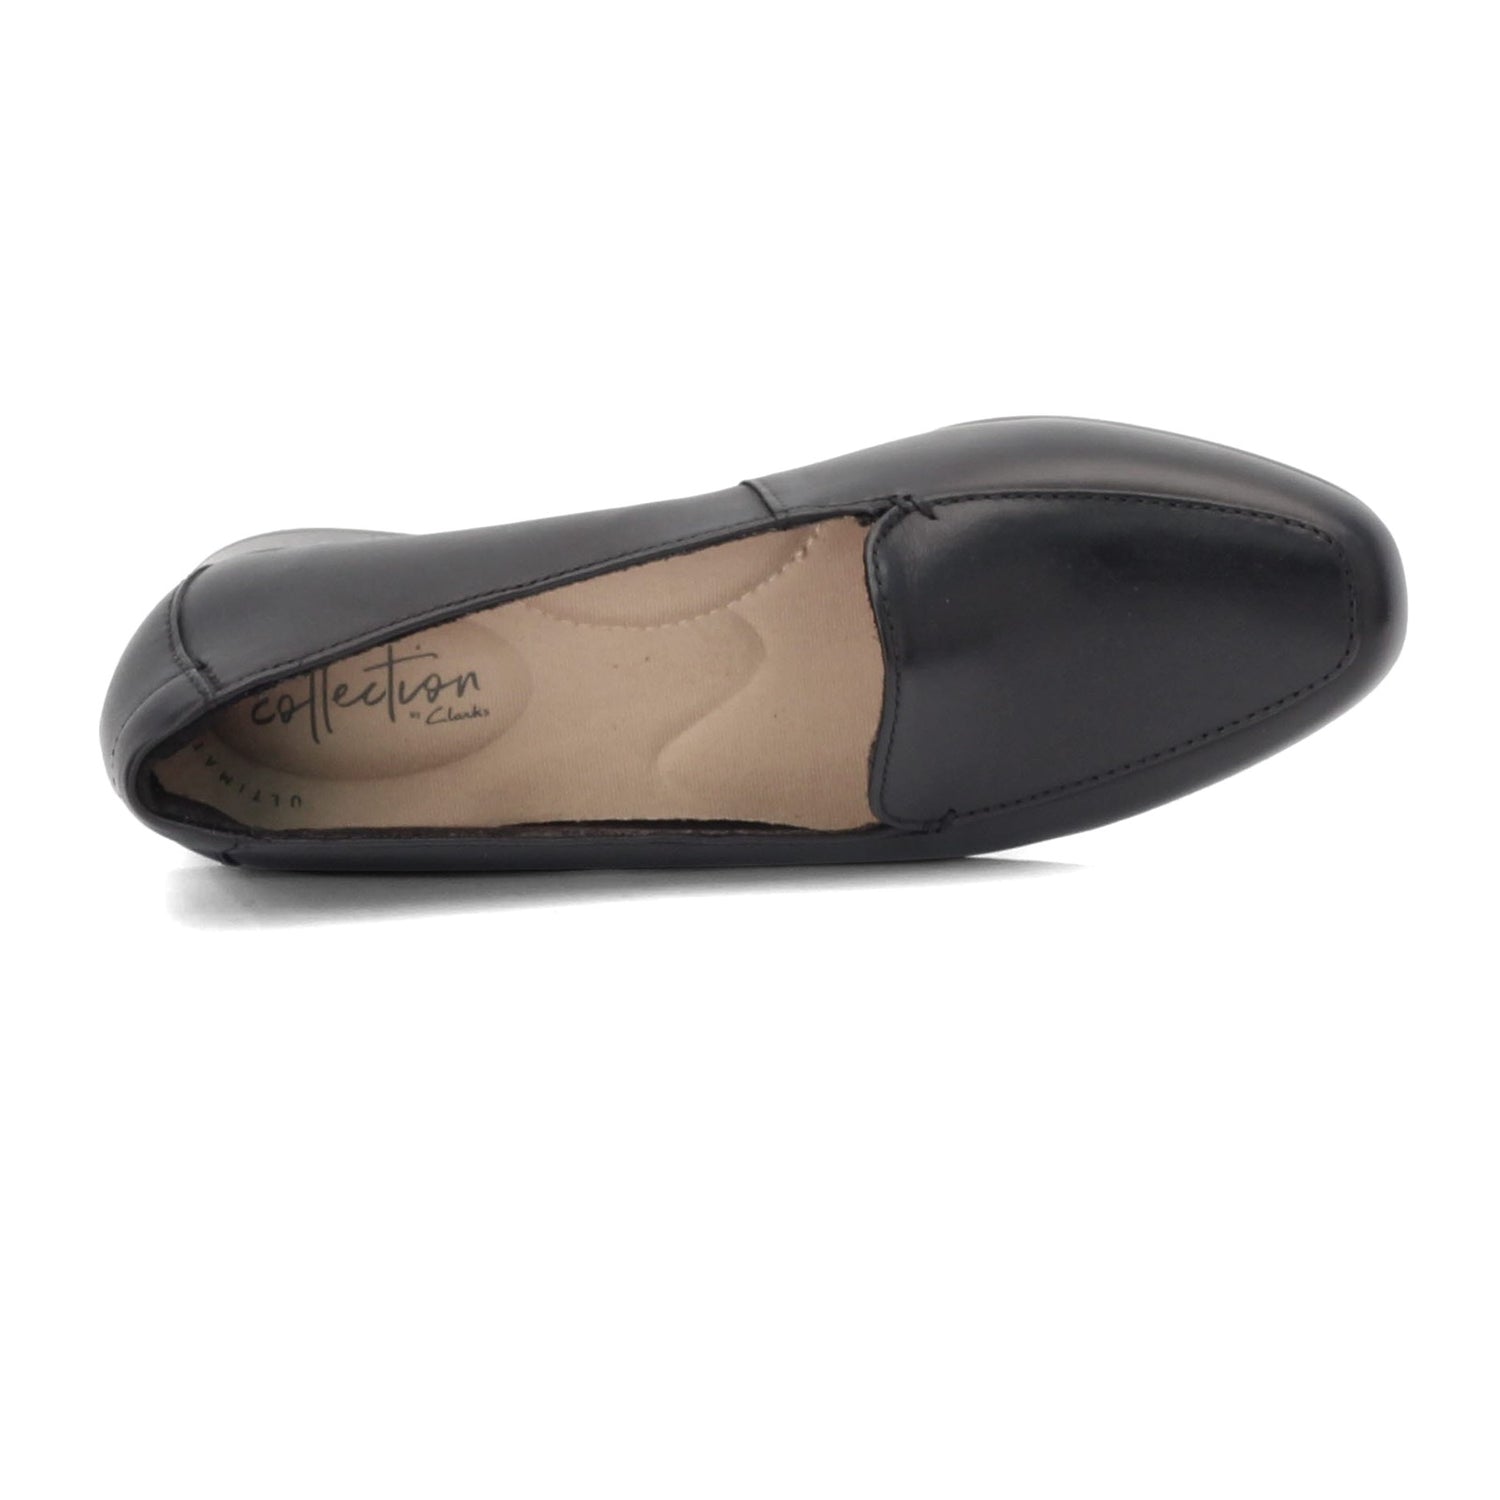 Peltz Shoes  Women's Clarks Juliet Lora Loafer BLACK 26136577